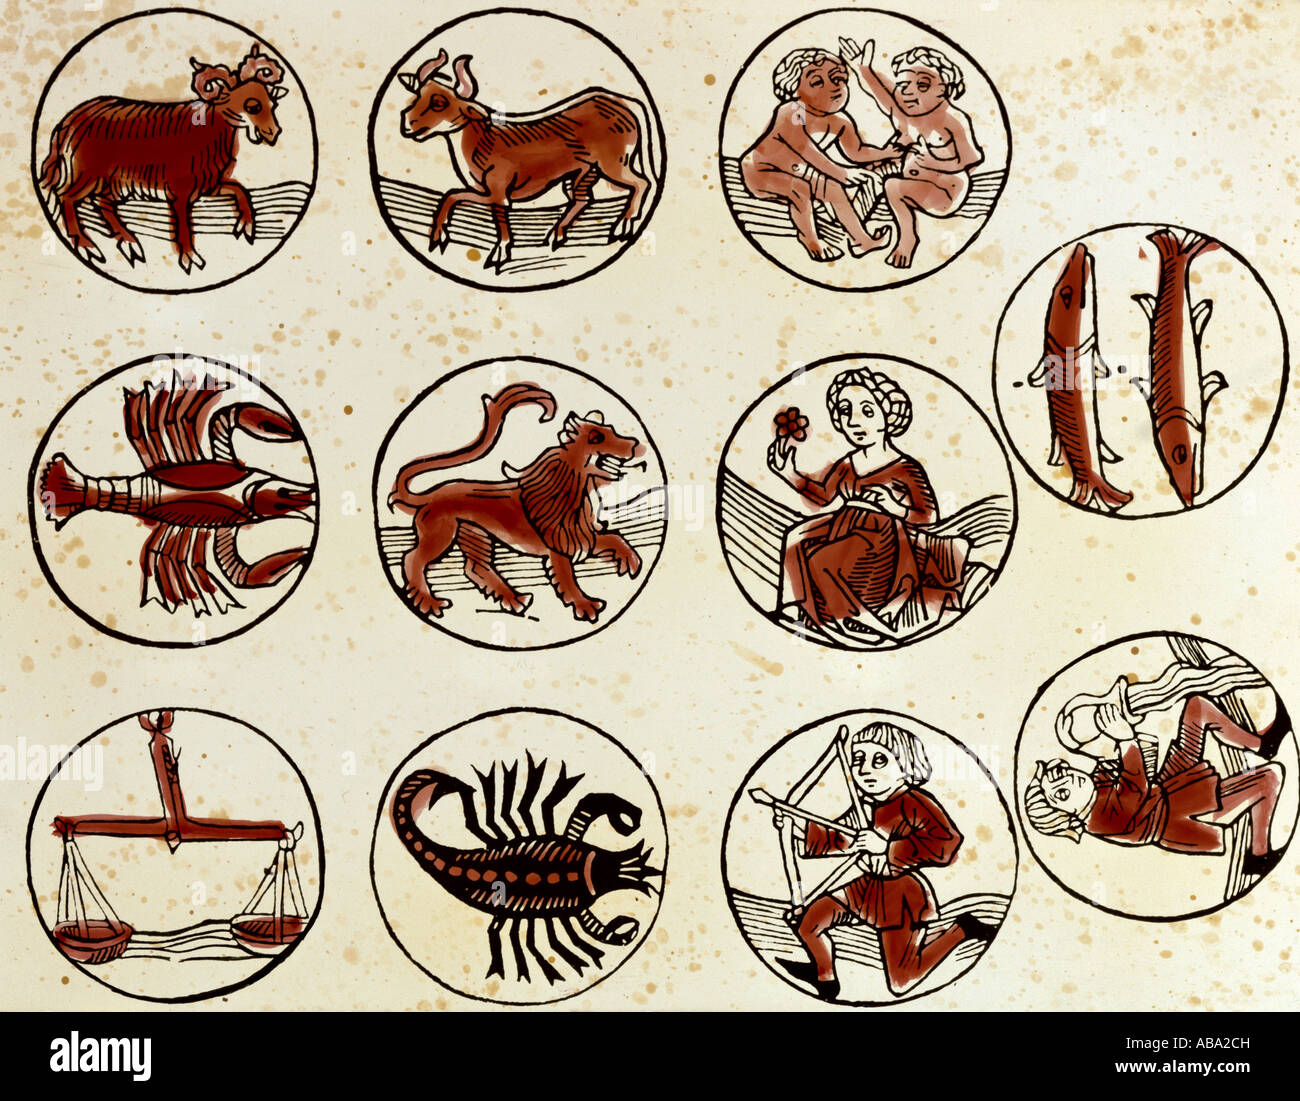 Astrologie, signes du zodiaque, coupe de bois colorée, 'Teutsch Kalender', imprimé par H. Schäffler, Allemagne, 1498, collection privée, , Banque D'Images